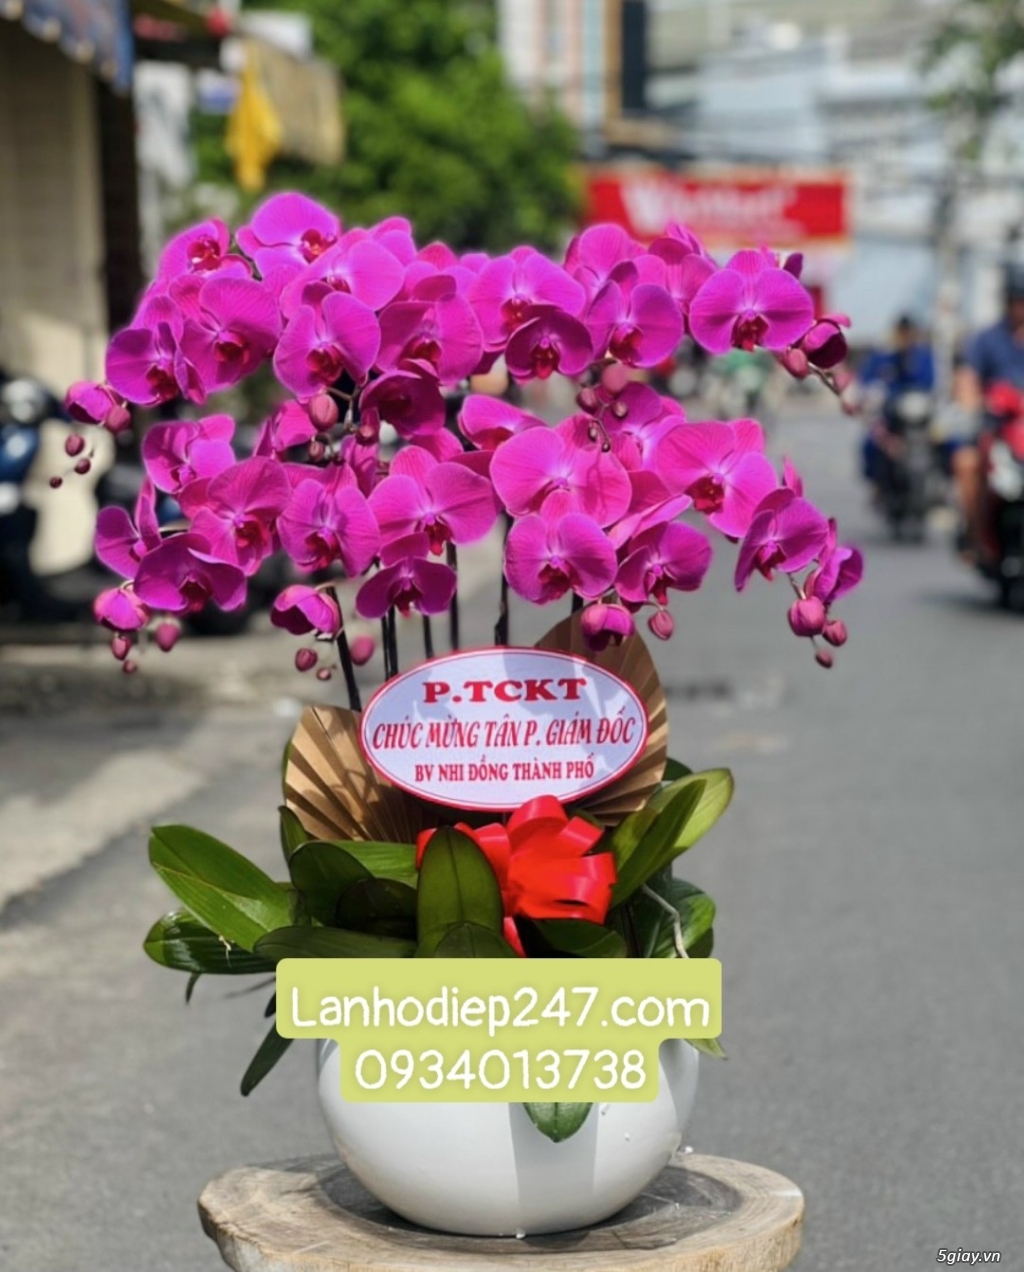 Tư vấn bí quyết tặng hoa theo phong thủy từ Shop Hoa Lan TPHCM 247 - 1